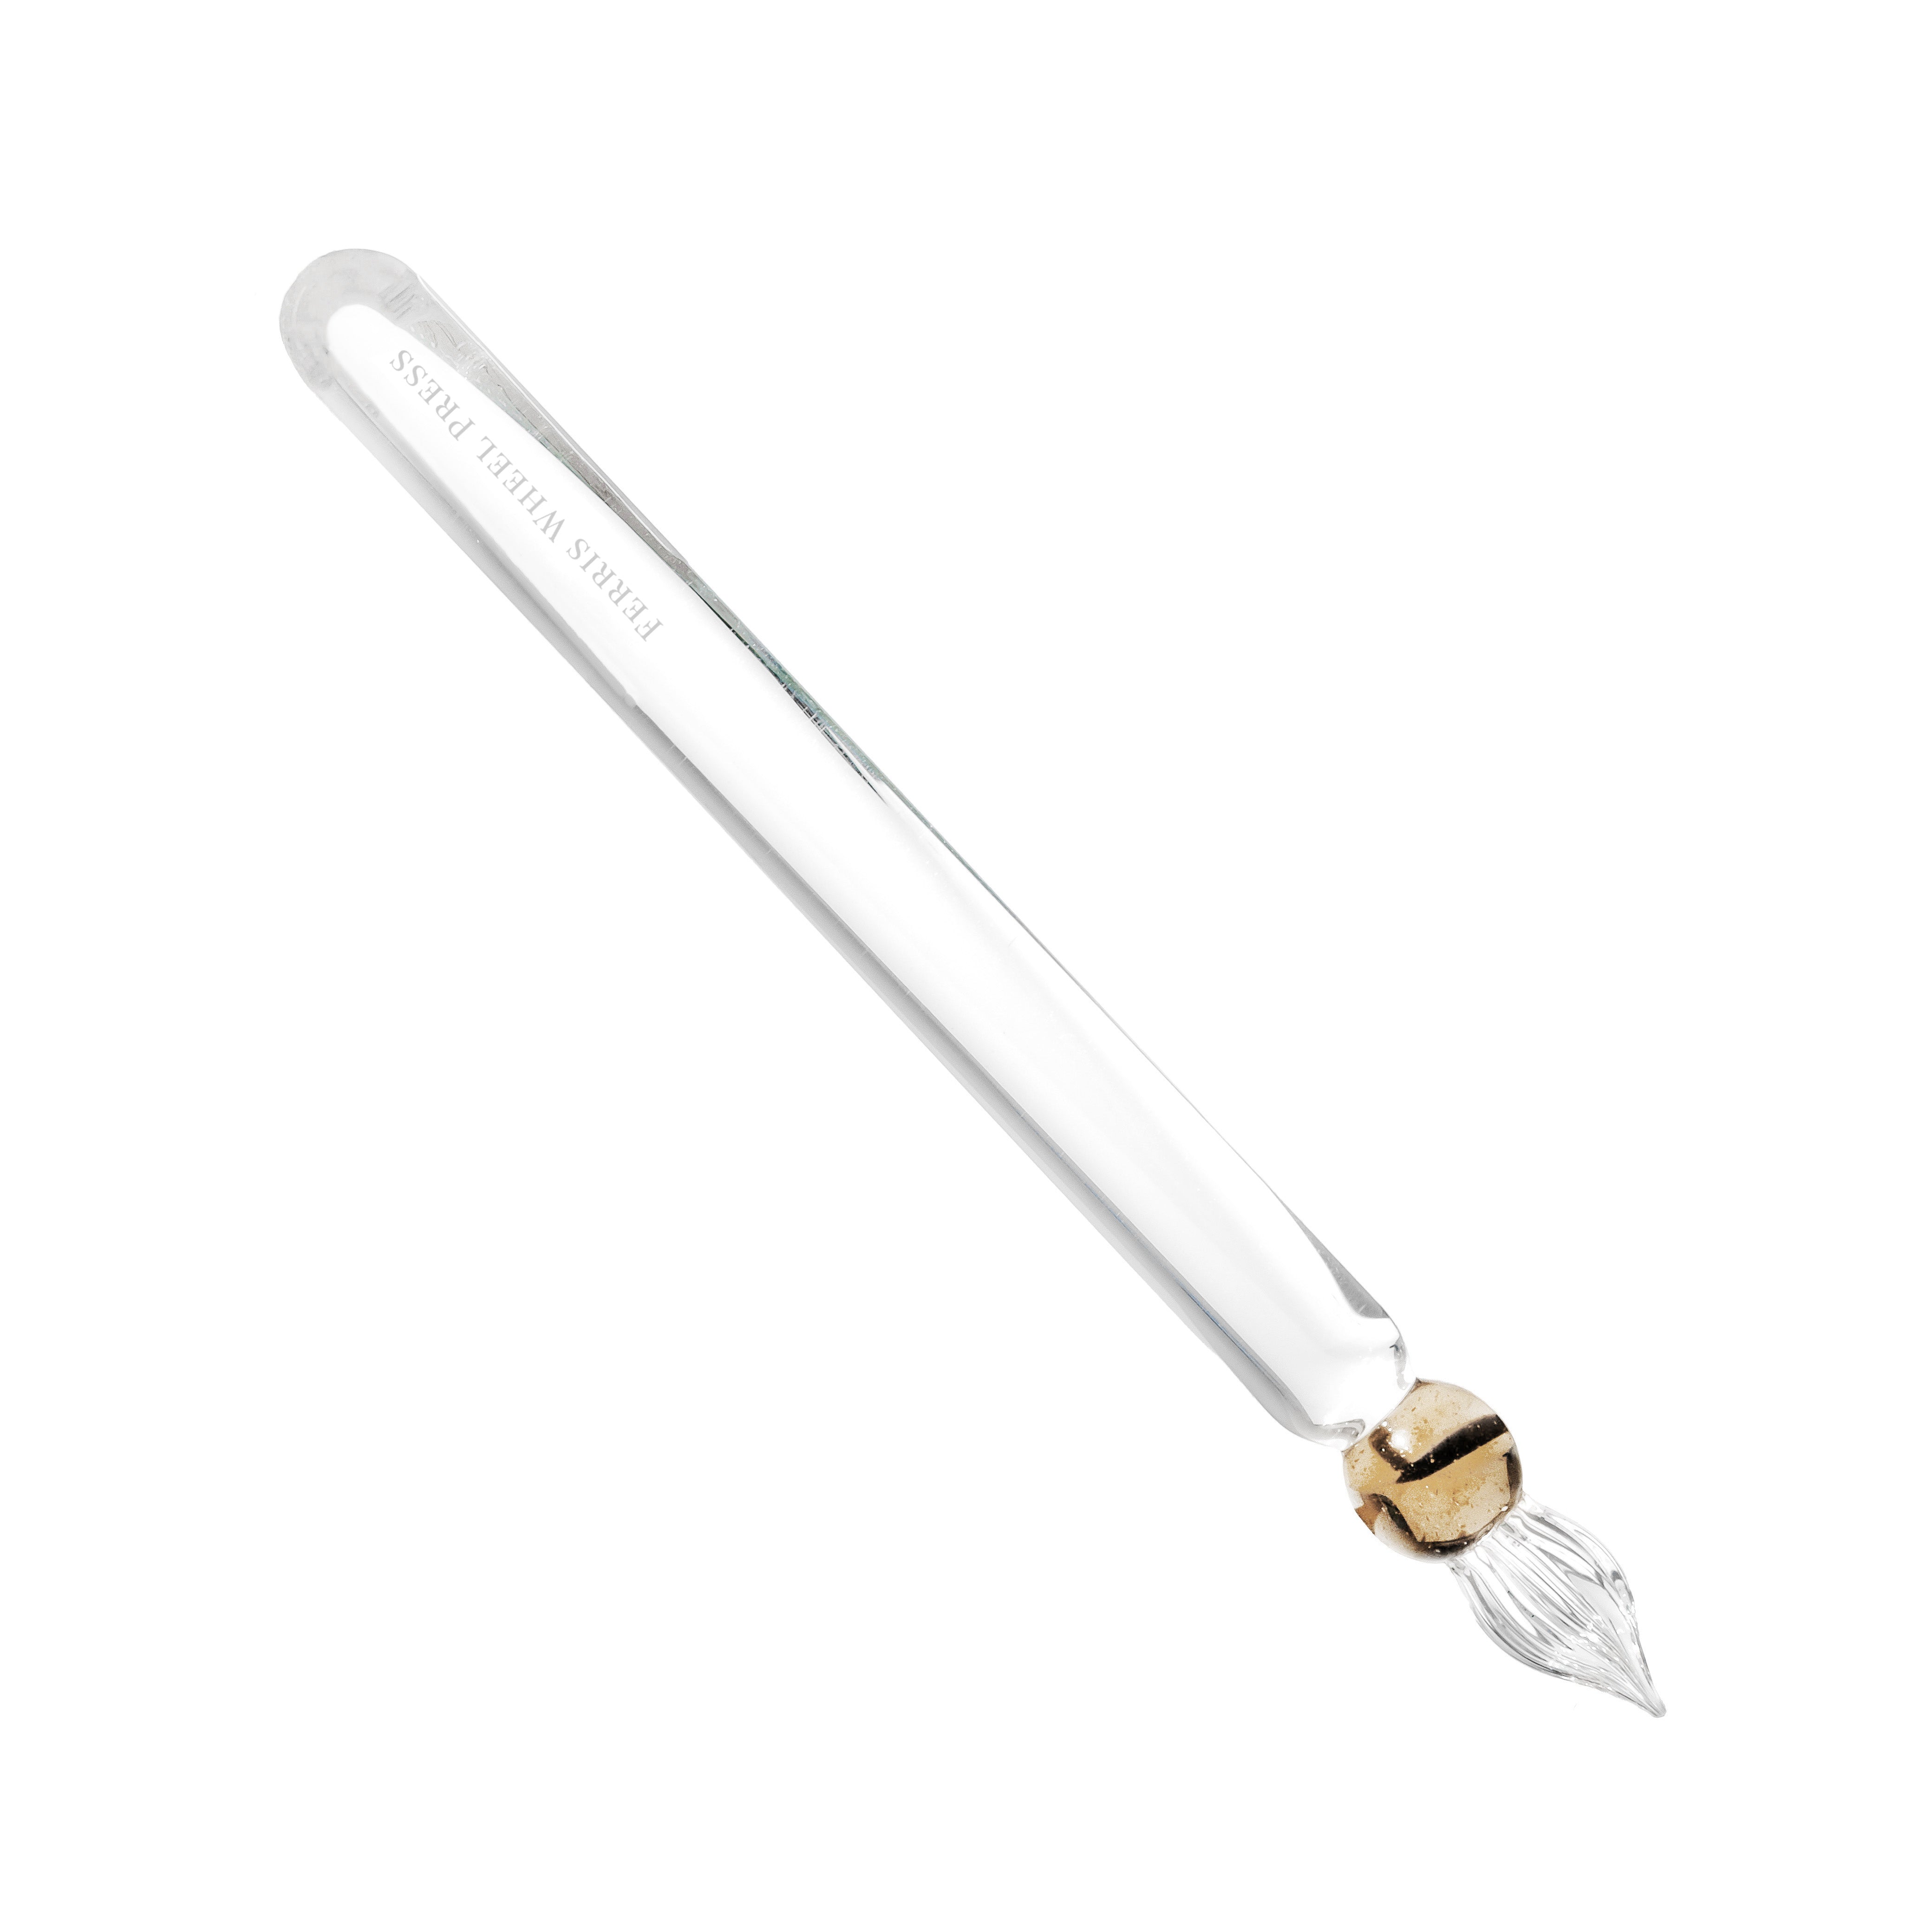 The Gumdrop Glass Dip Pen - Oyster